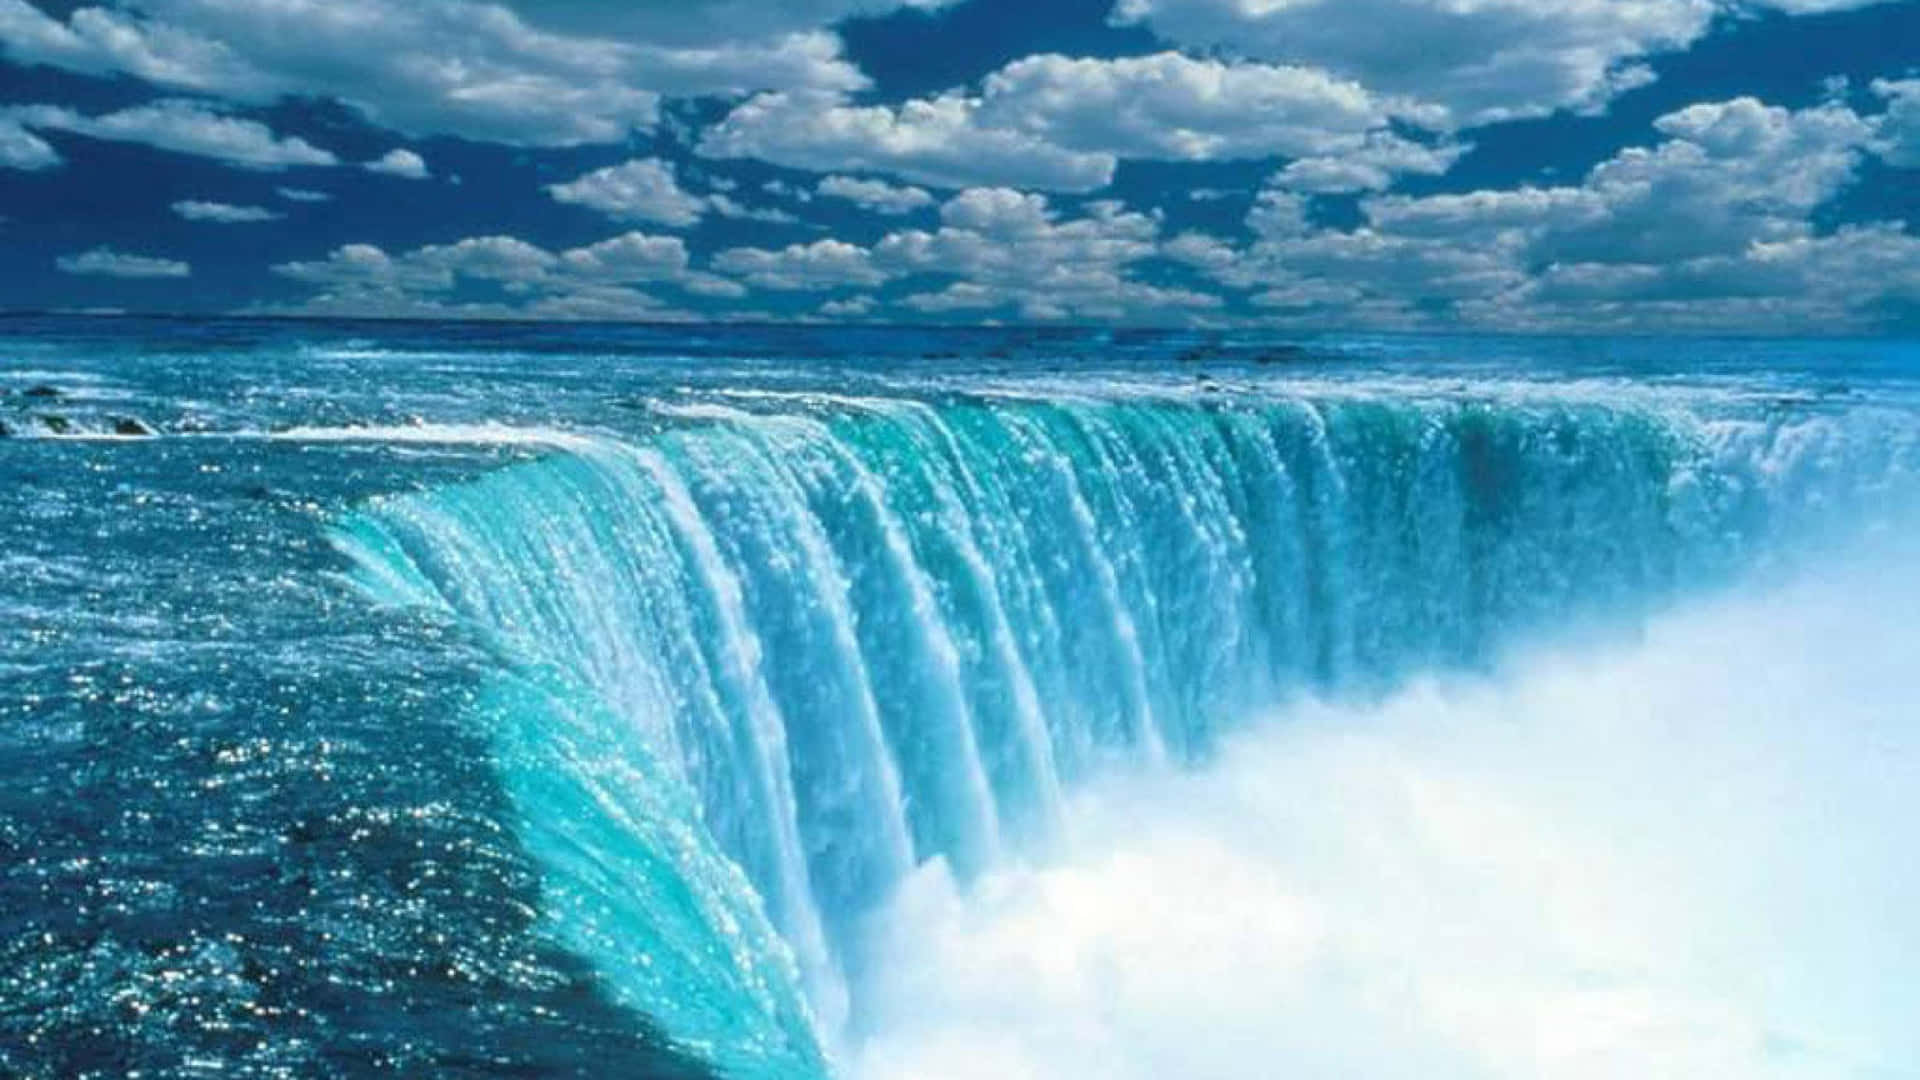 Paisagemdo Niagara Falls No Canadá Em Azul. Papel de Parede